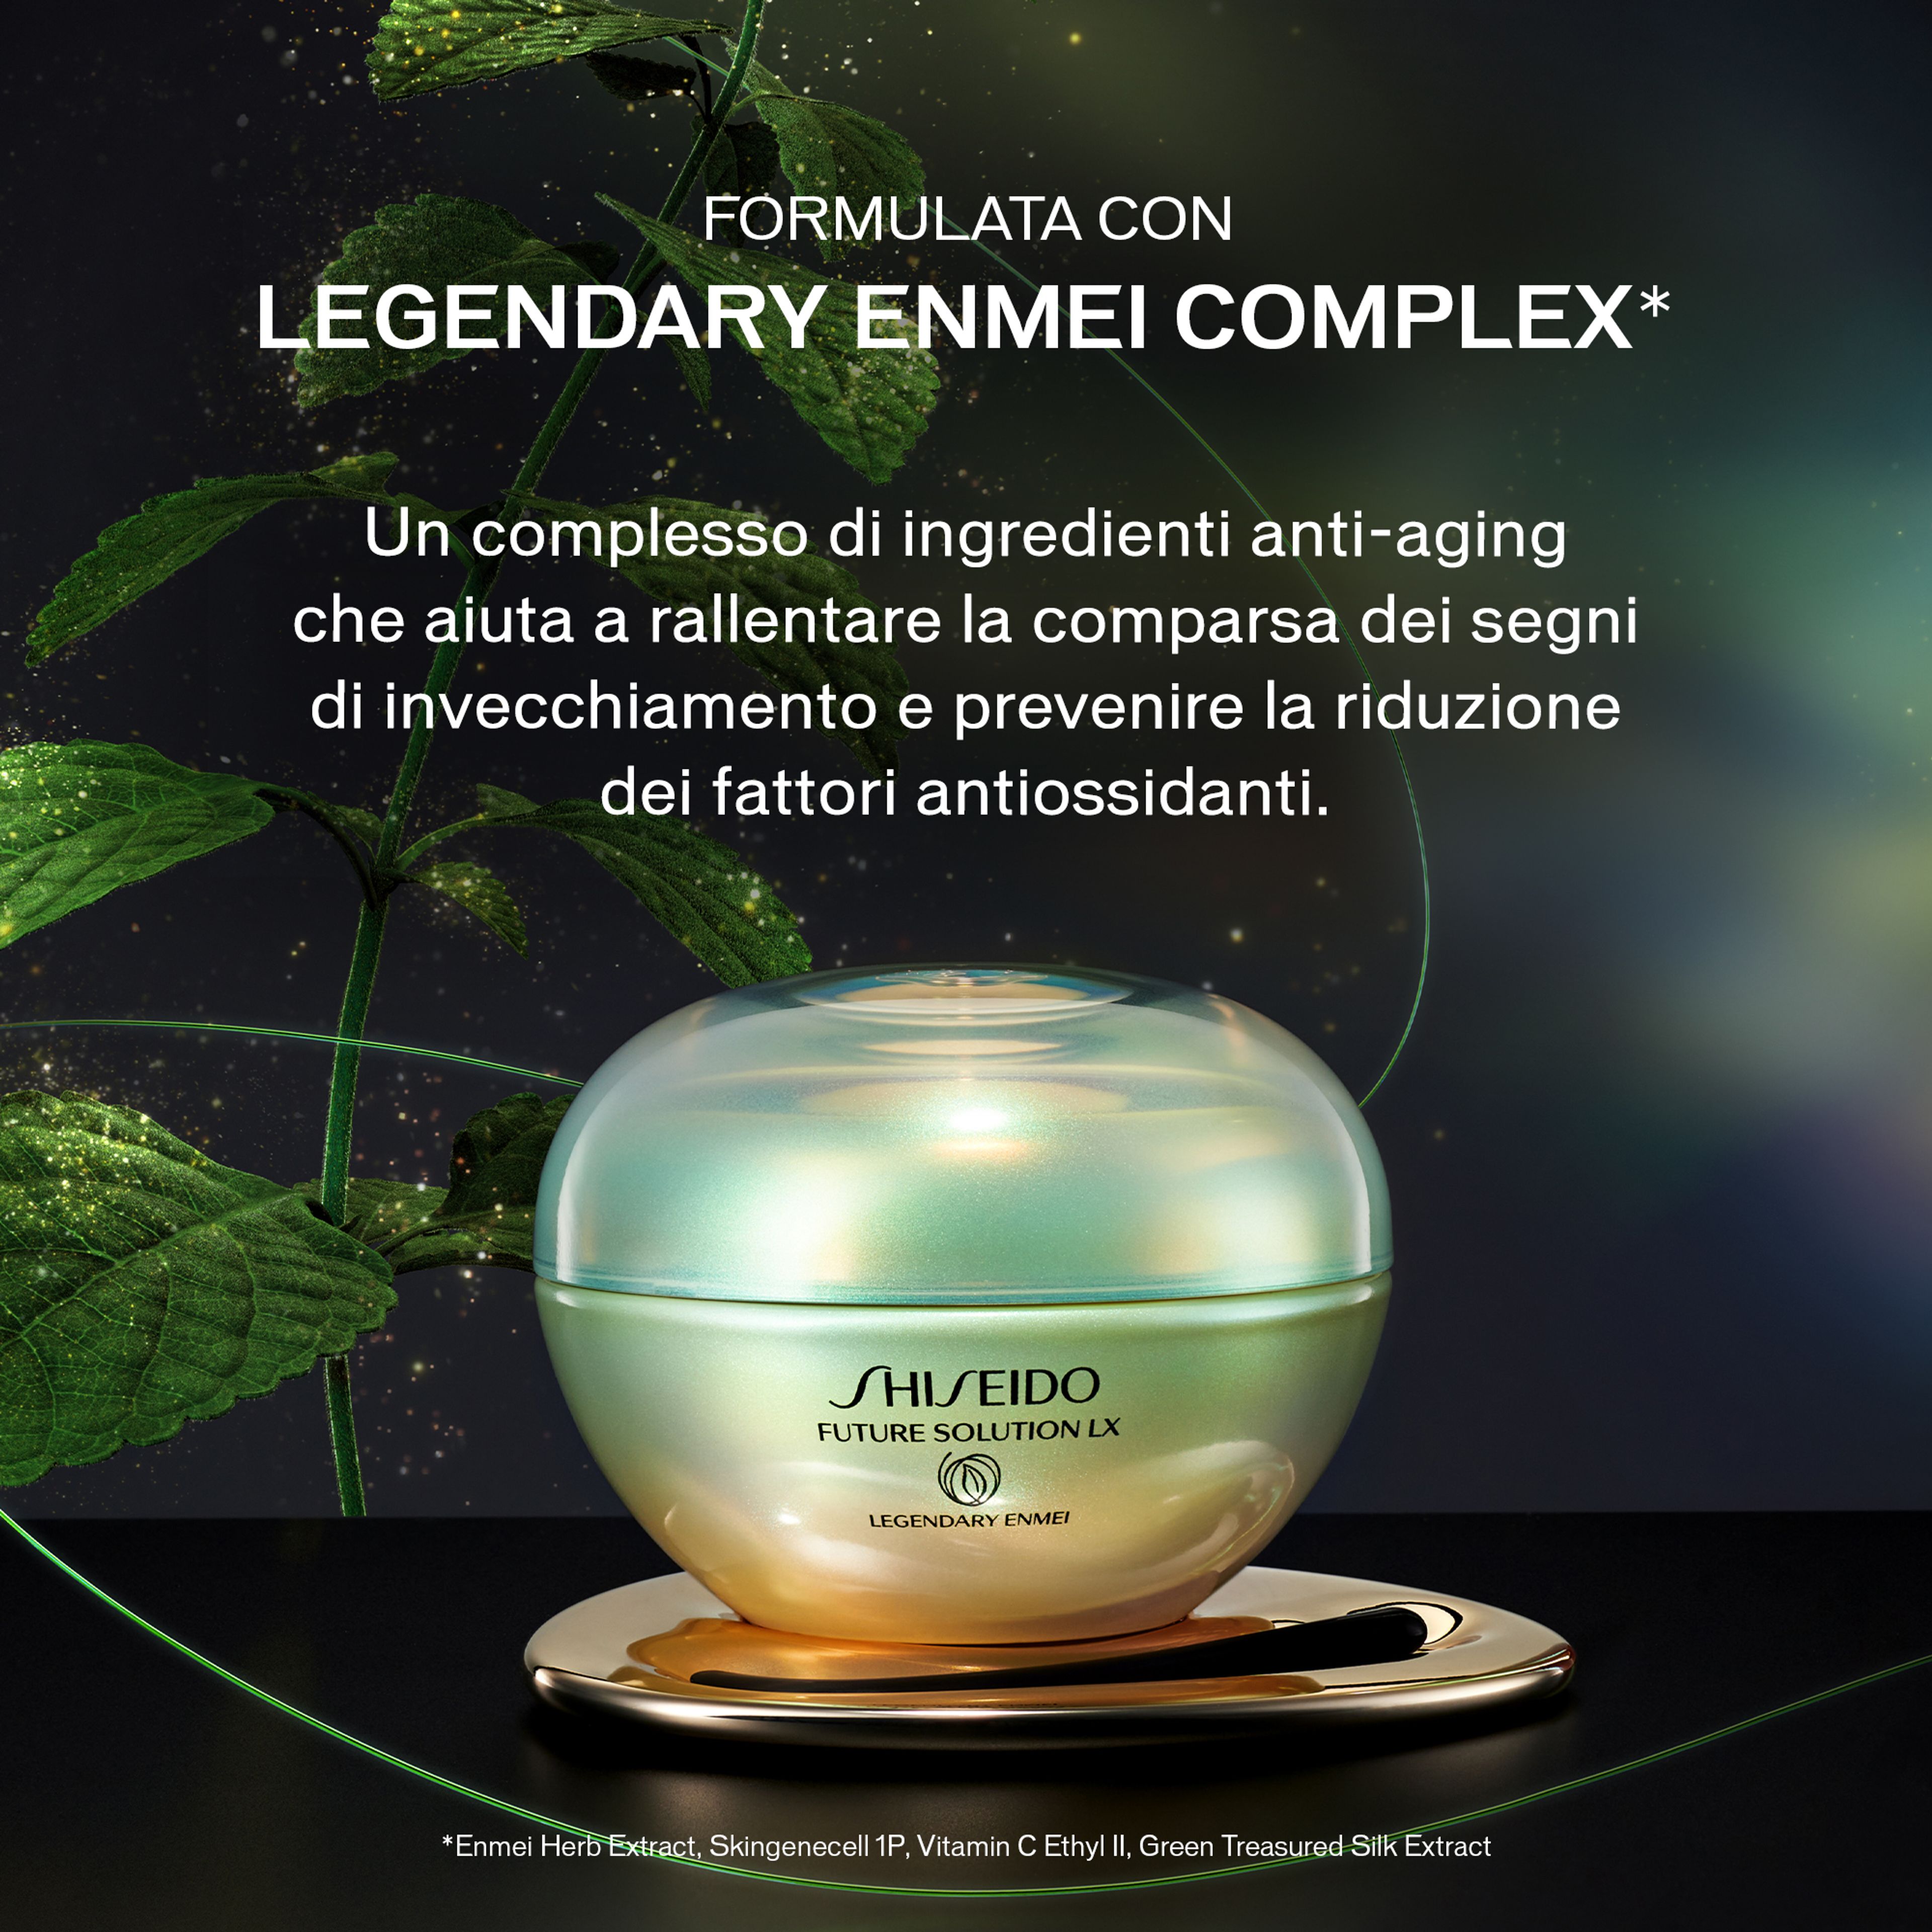 Legendary Enmei Ultimate Renewing Cream Shiseido 5